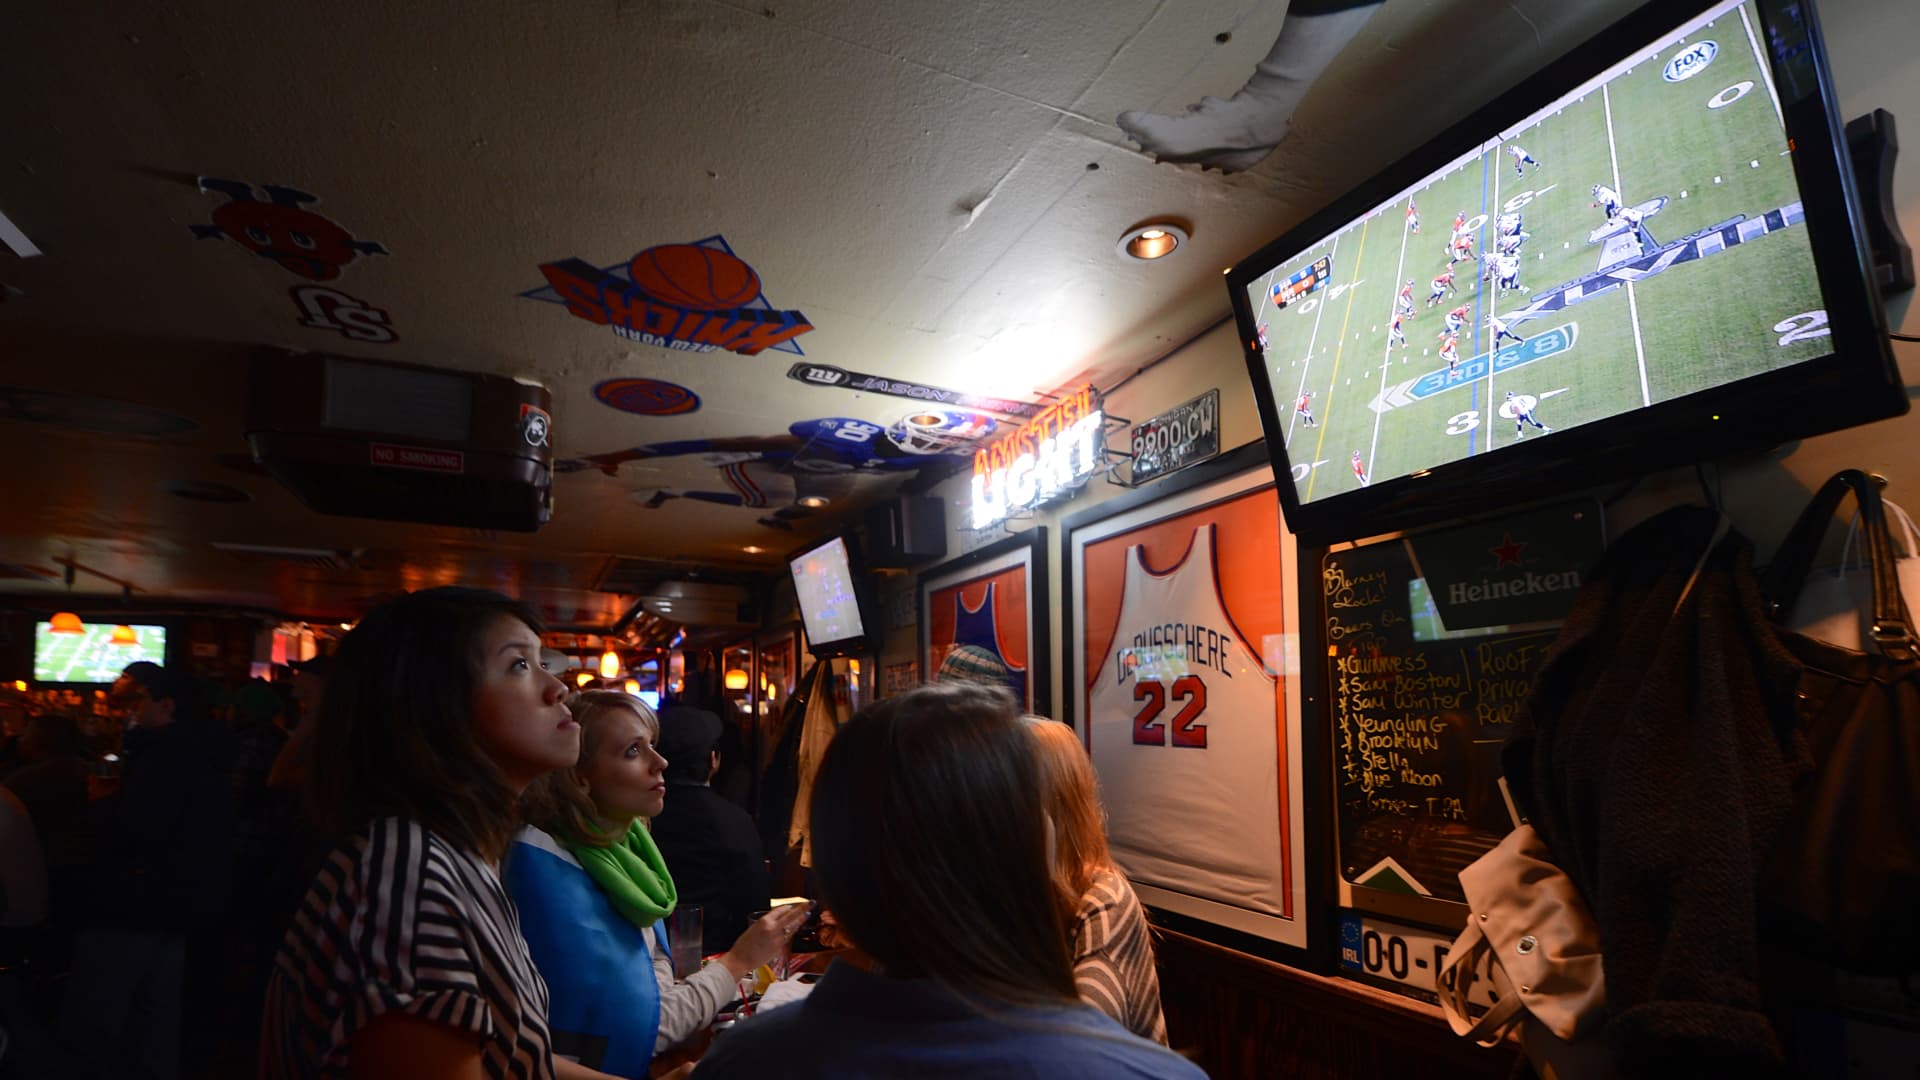 NFL, RedBird's EverPass to feature Sunday Ticket in bars, restaurants